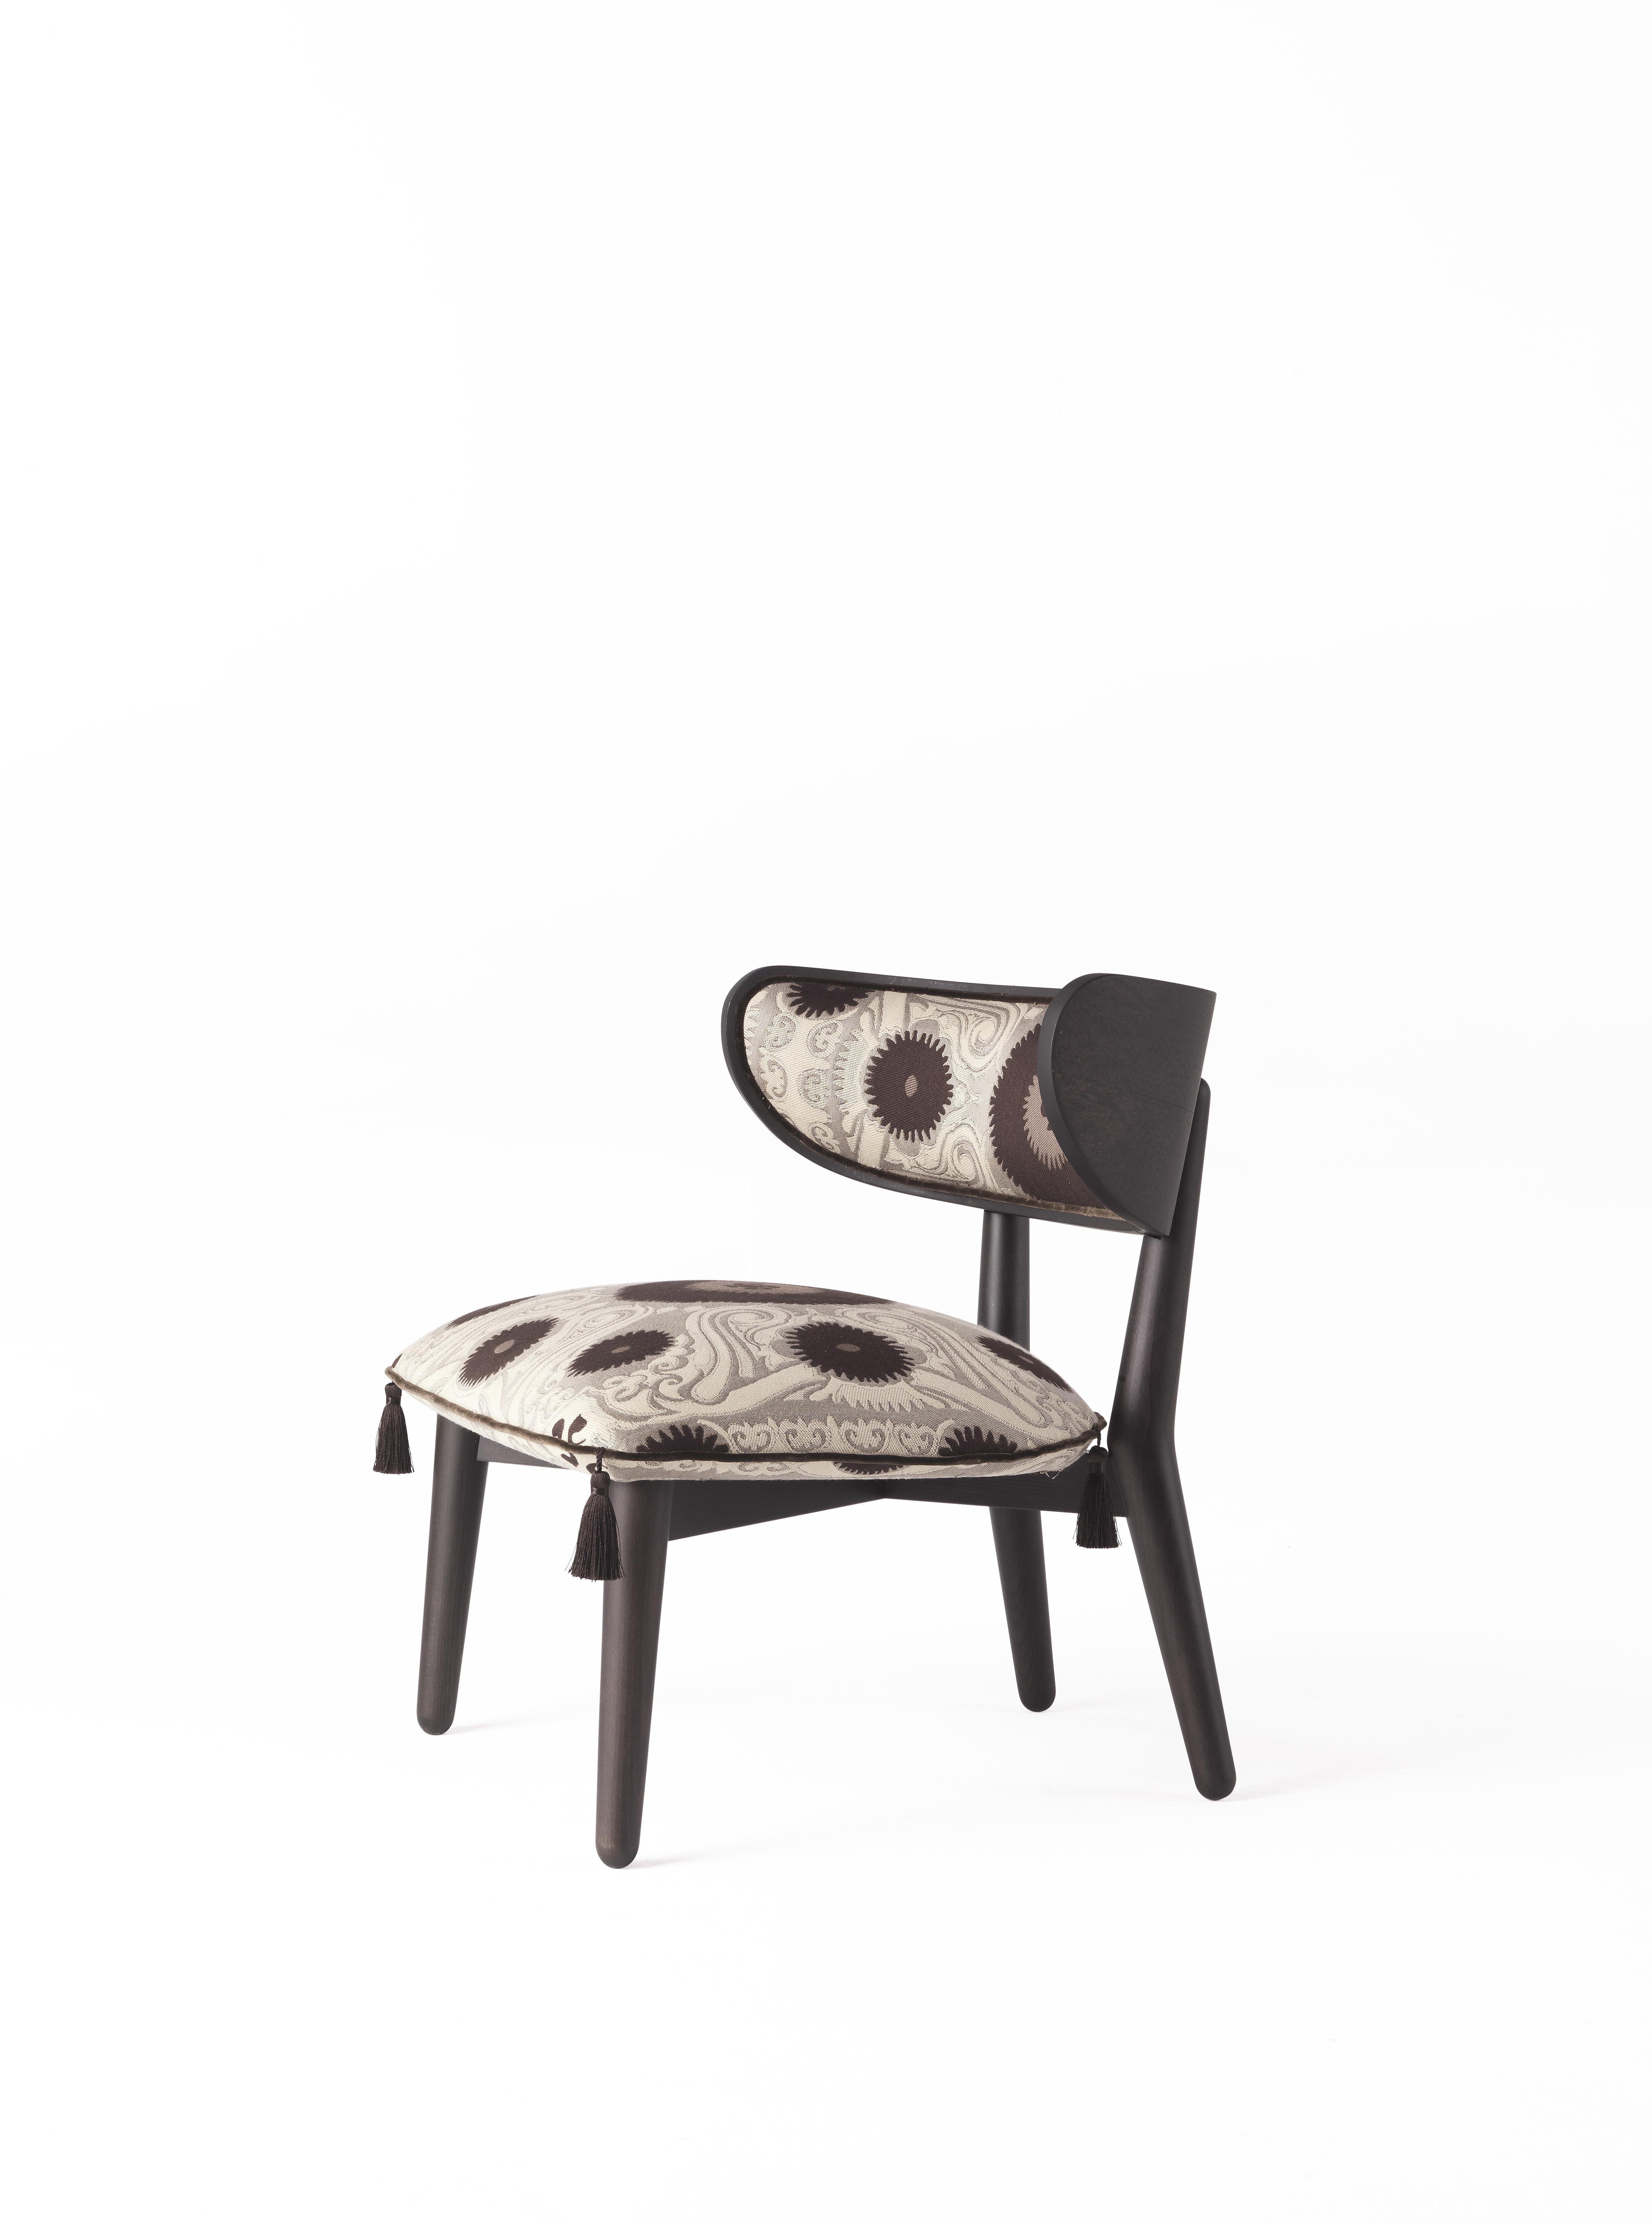 Ein einladender und stimmungsvoller Sessel, der die eklektische Seele von ETRO Home Interiors widerspiegelt. Die ethnische Inspiration, die bereits im Namen enthalten ist, der sich auf die Könige der persischen Tradition bezieht, findet sich im